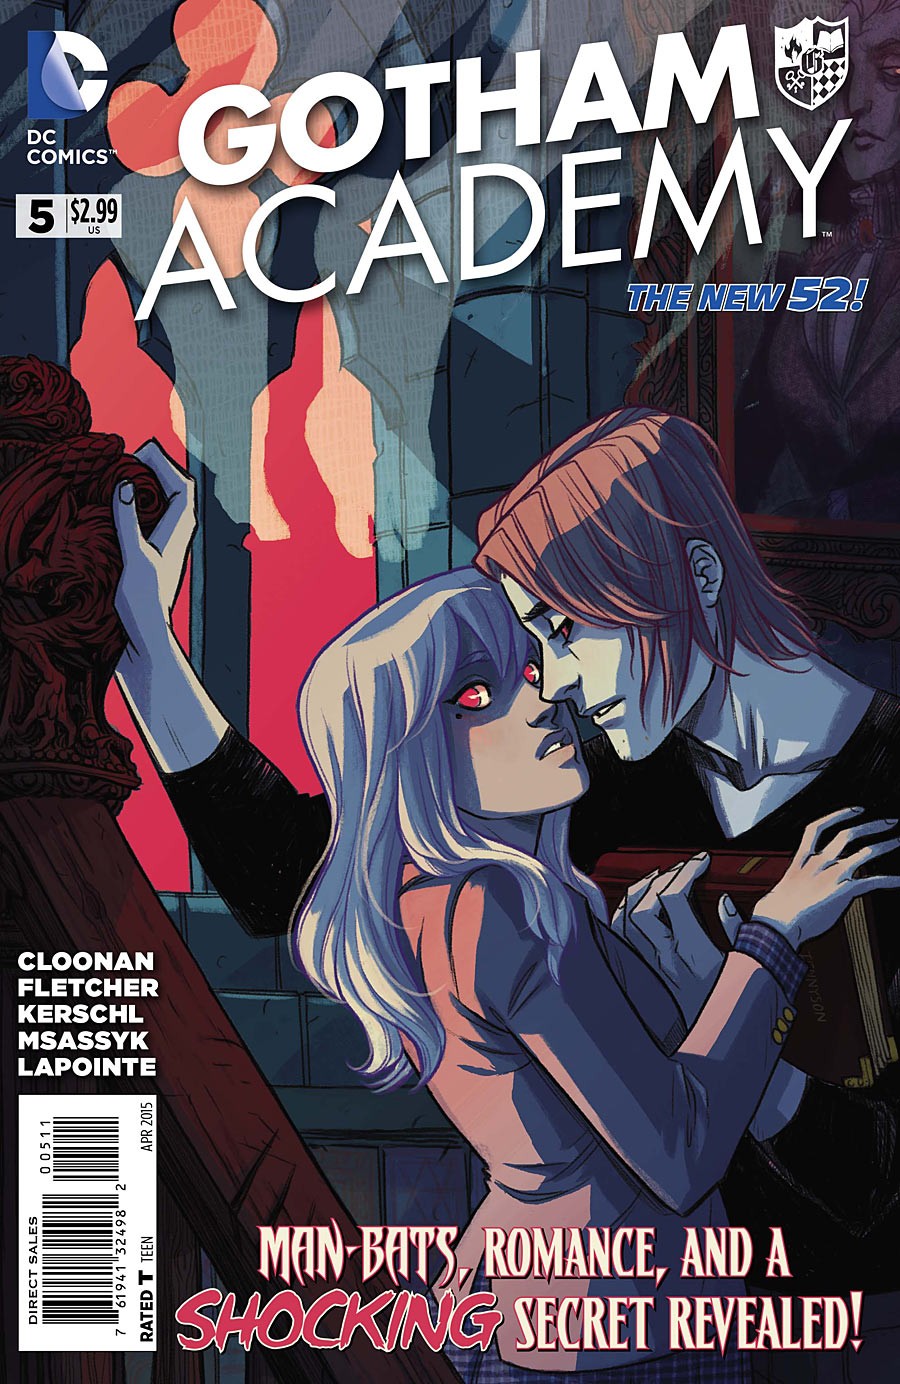 Gotham Academy Vol. 1 #5